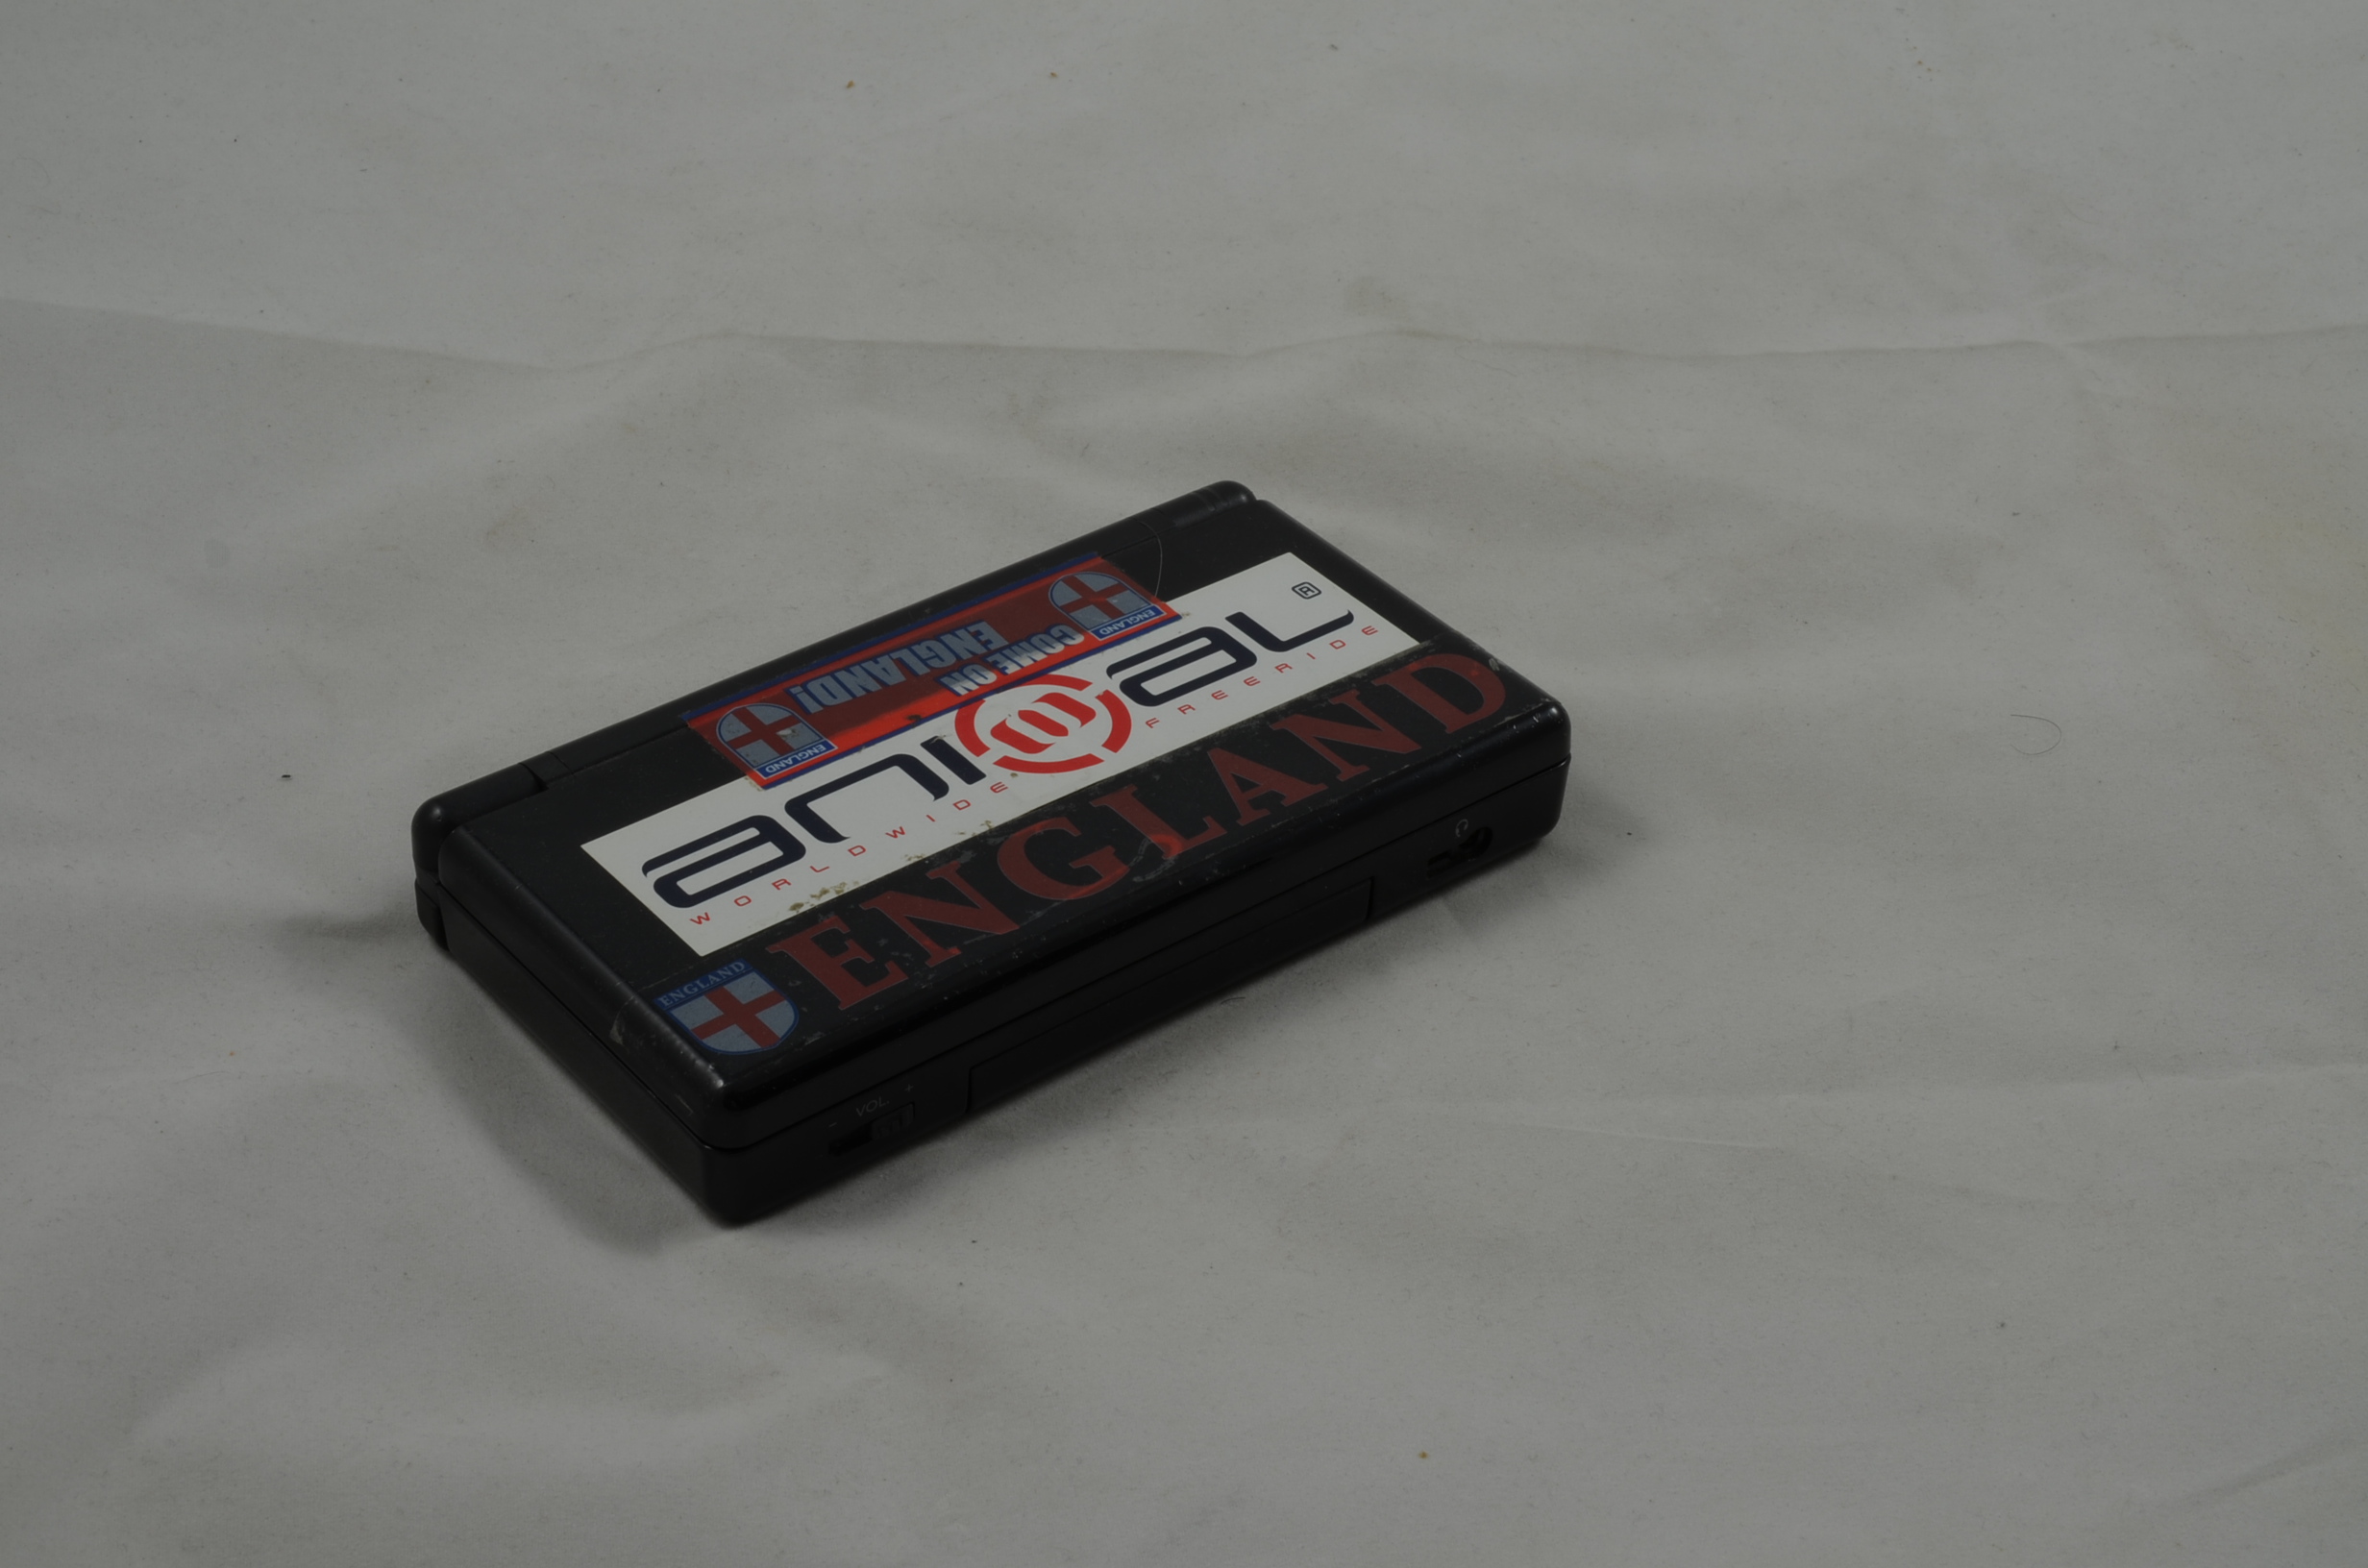 Produktbild von Nintendo DS Lite Konsole in schwarz mit Klebern